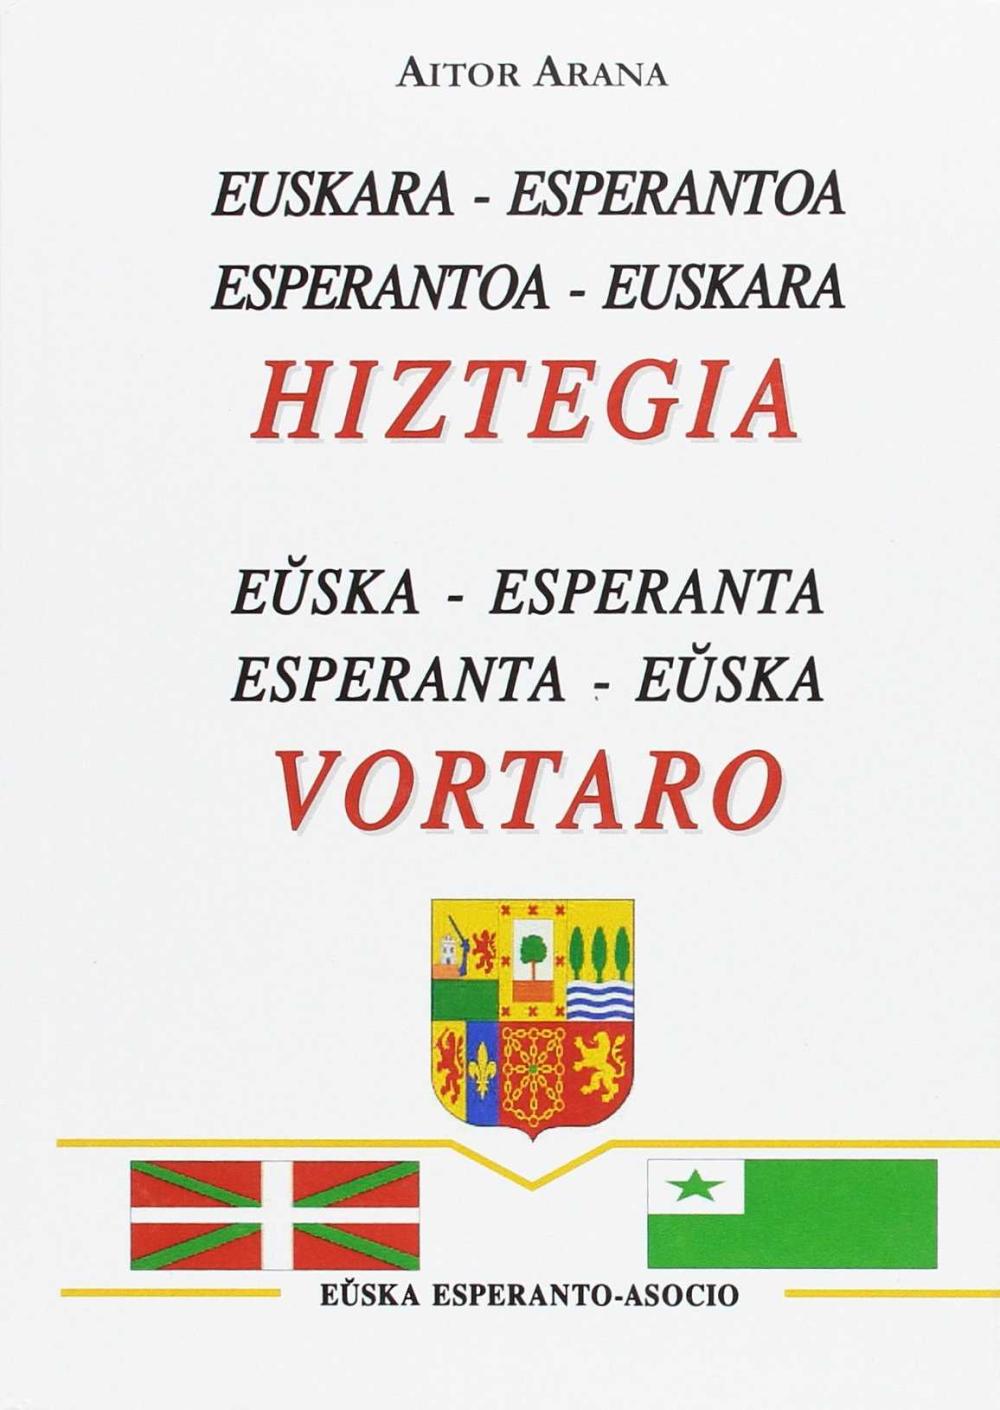 HIZTEGIA EUSKARA-ESPERANTO VORTARO